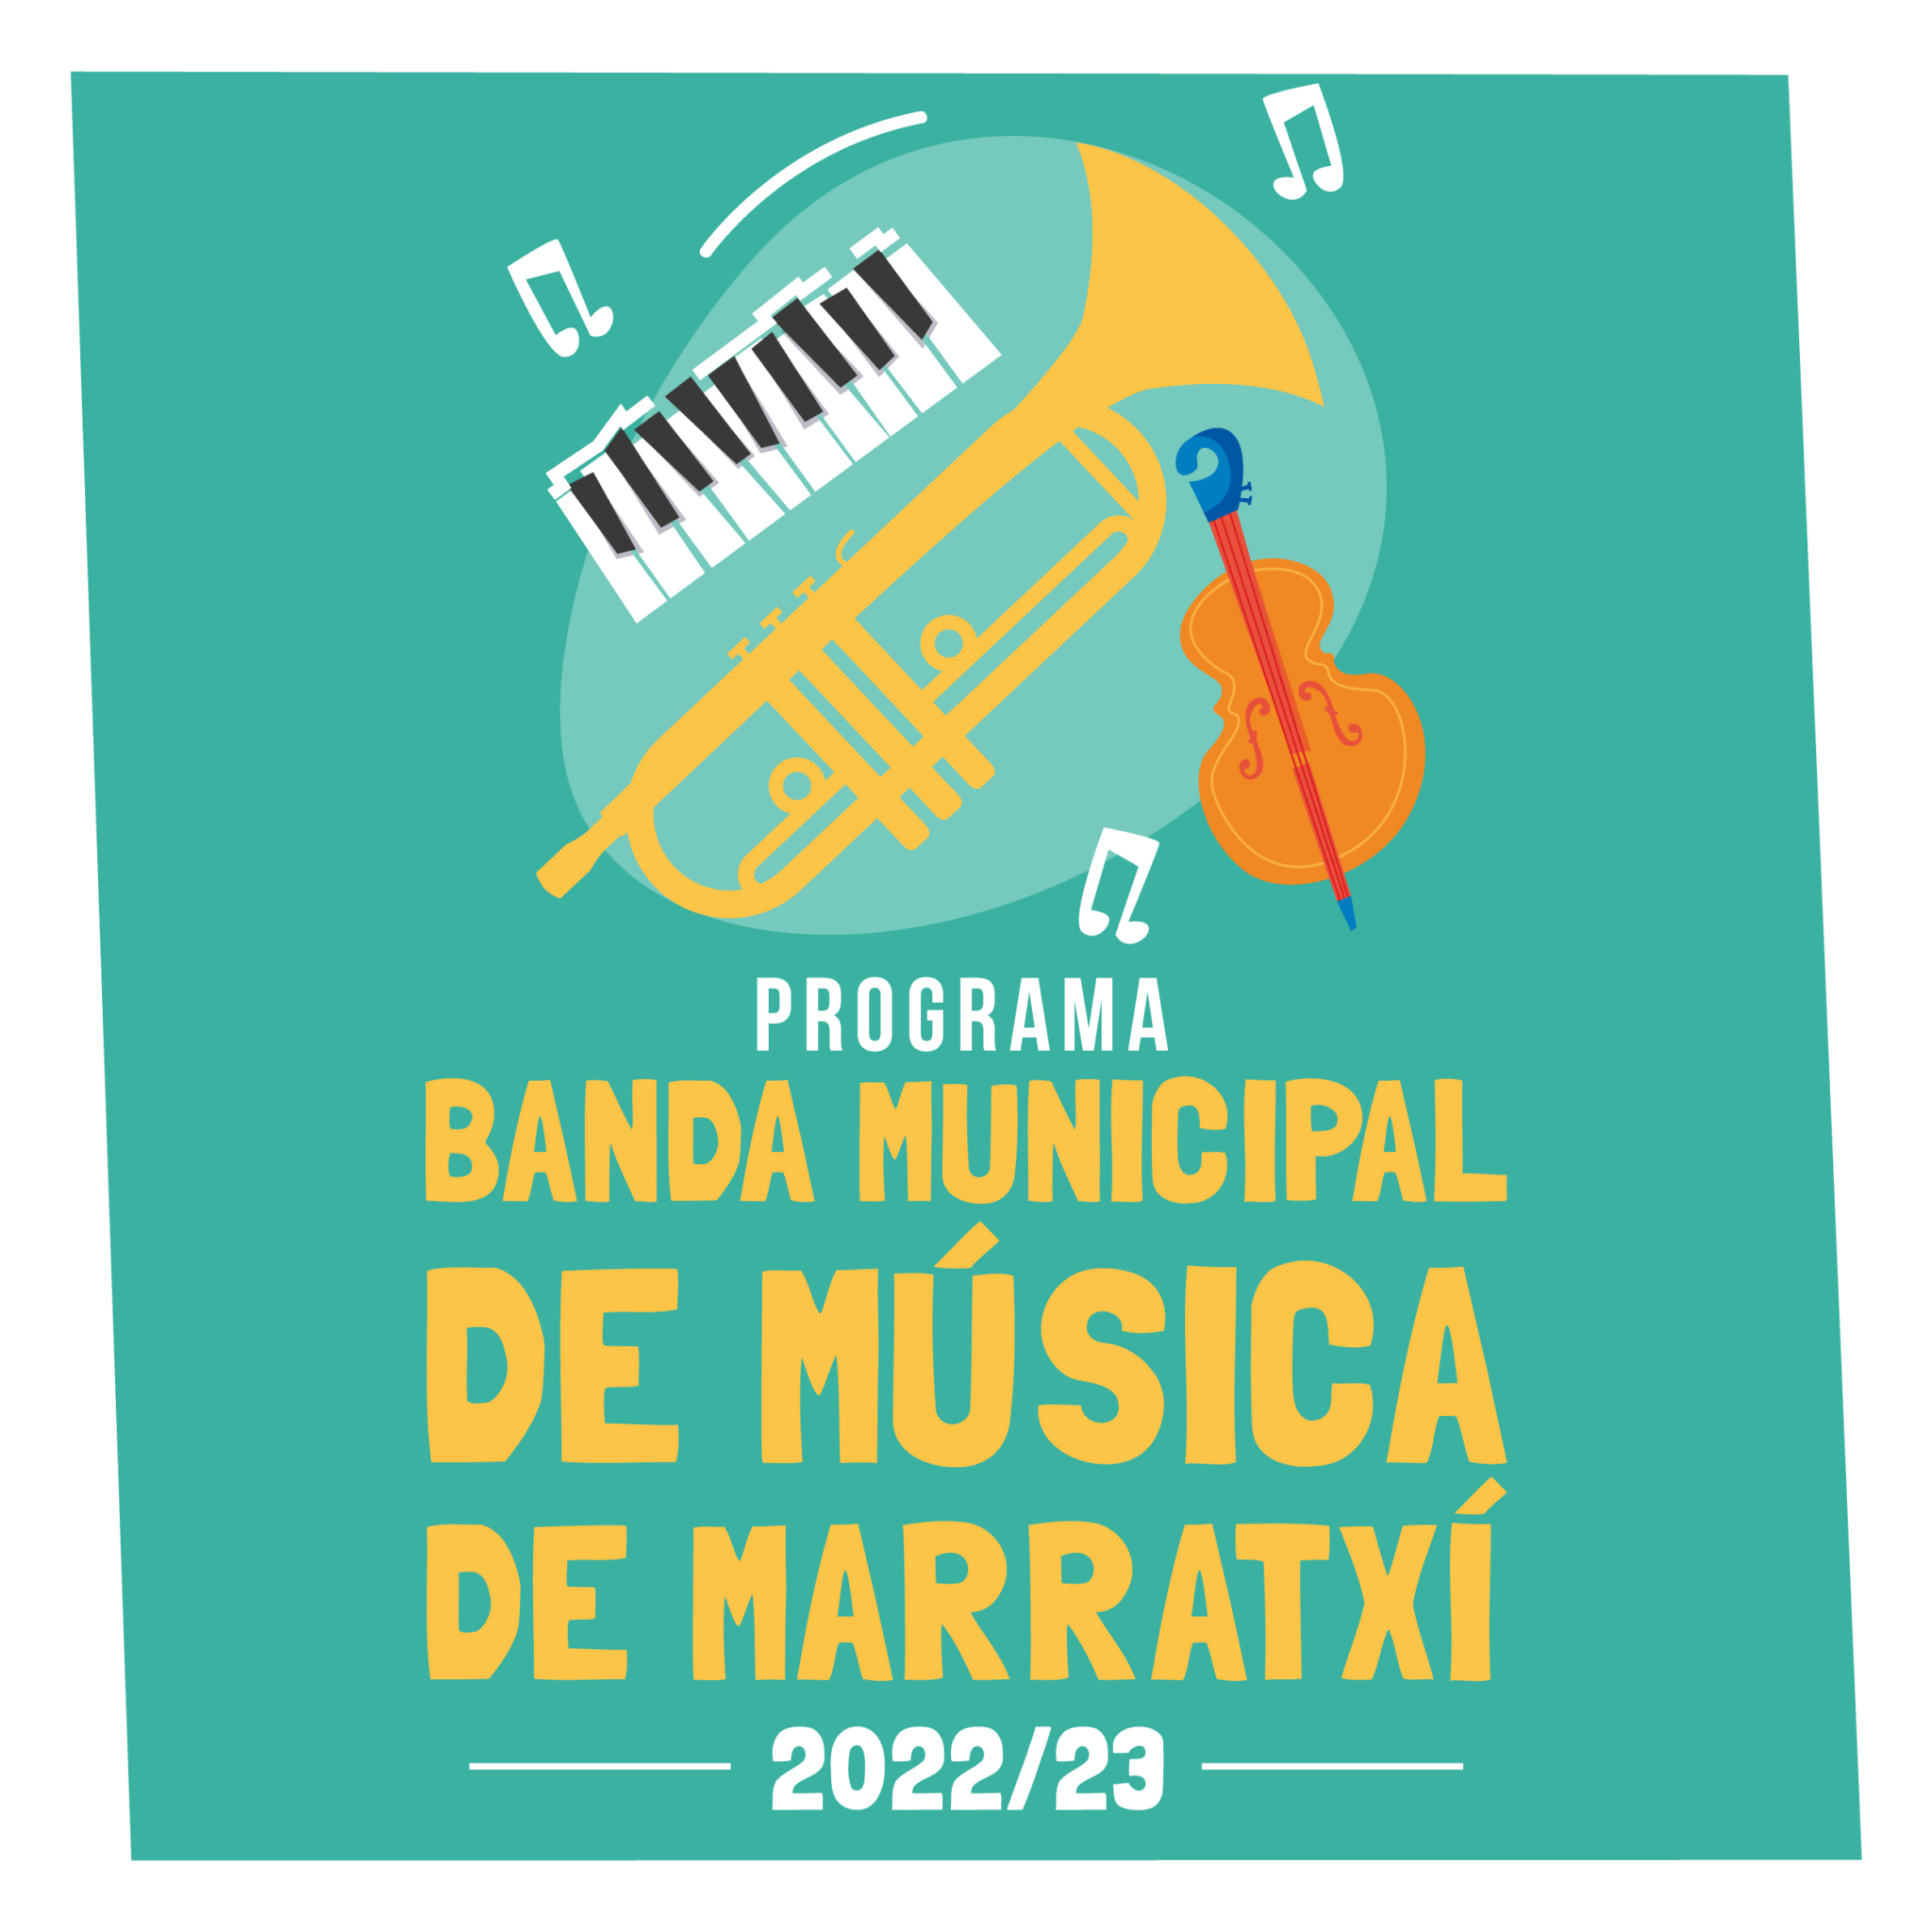 https://marratxi.es/banda-municipal-de-musica